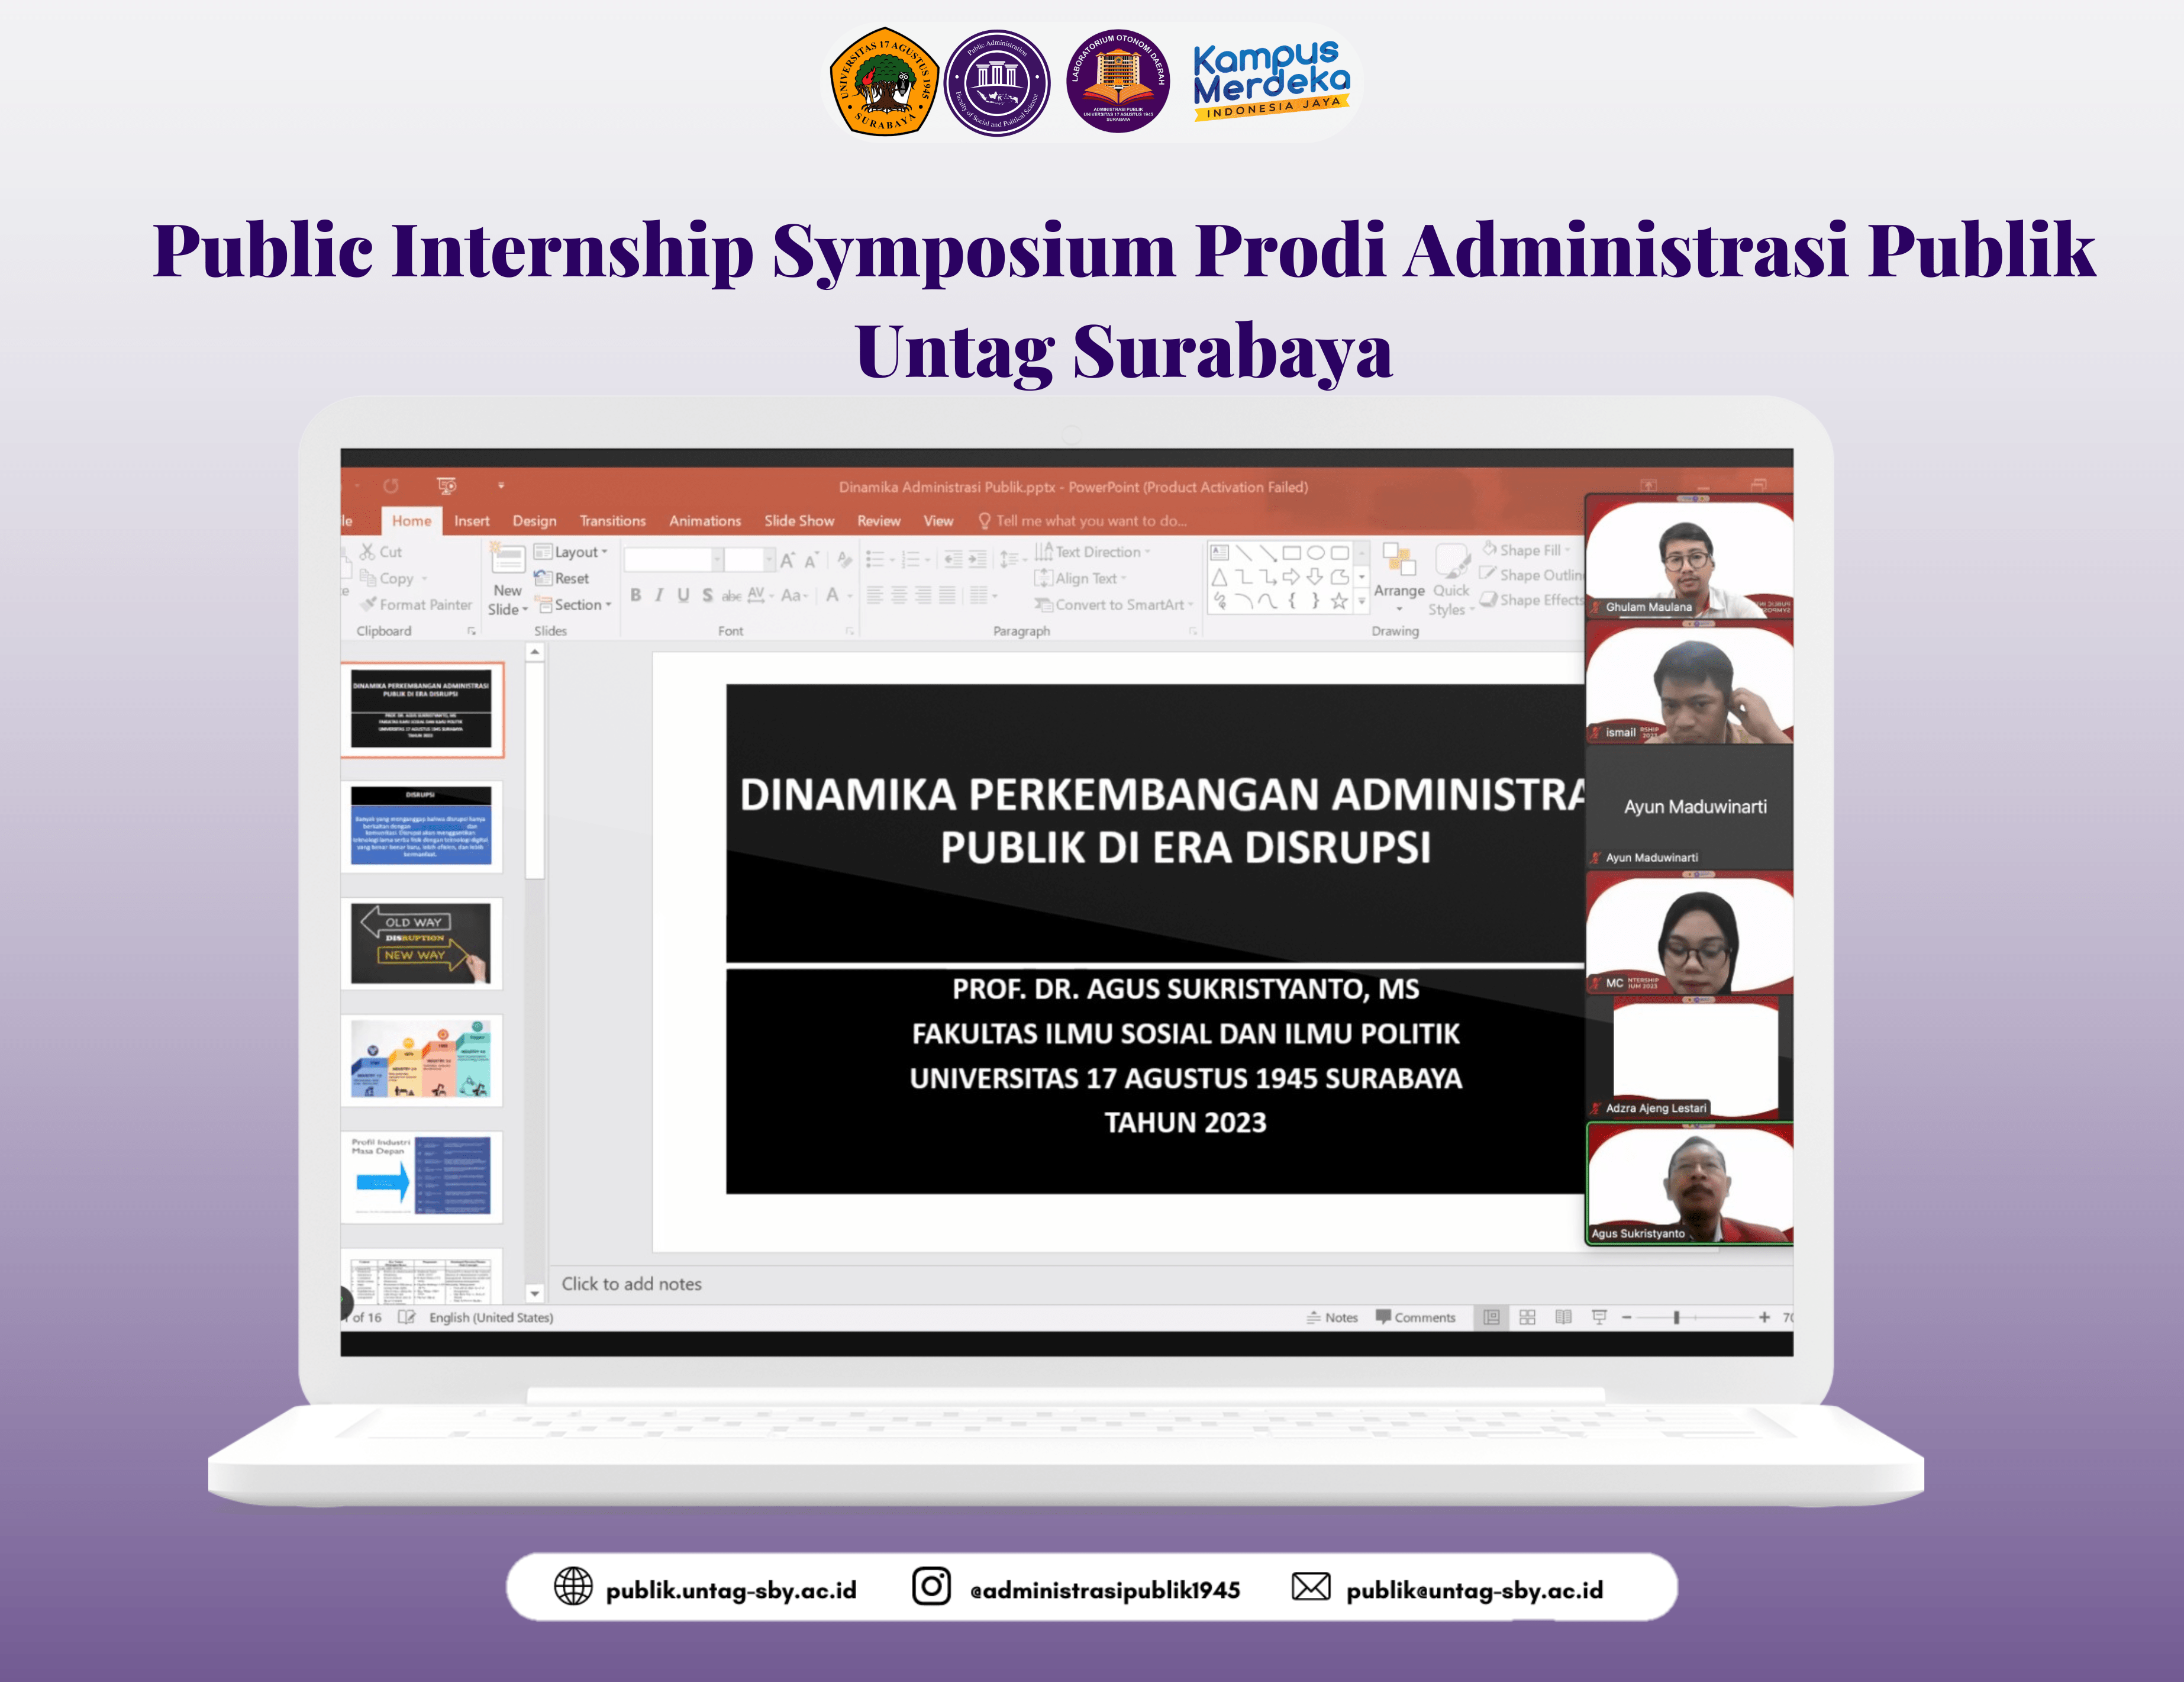 Public Internship Symposium Prodi Administrasi Publik Untag Surabaya